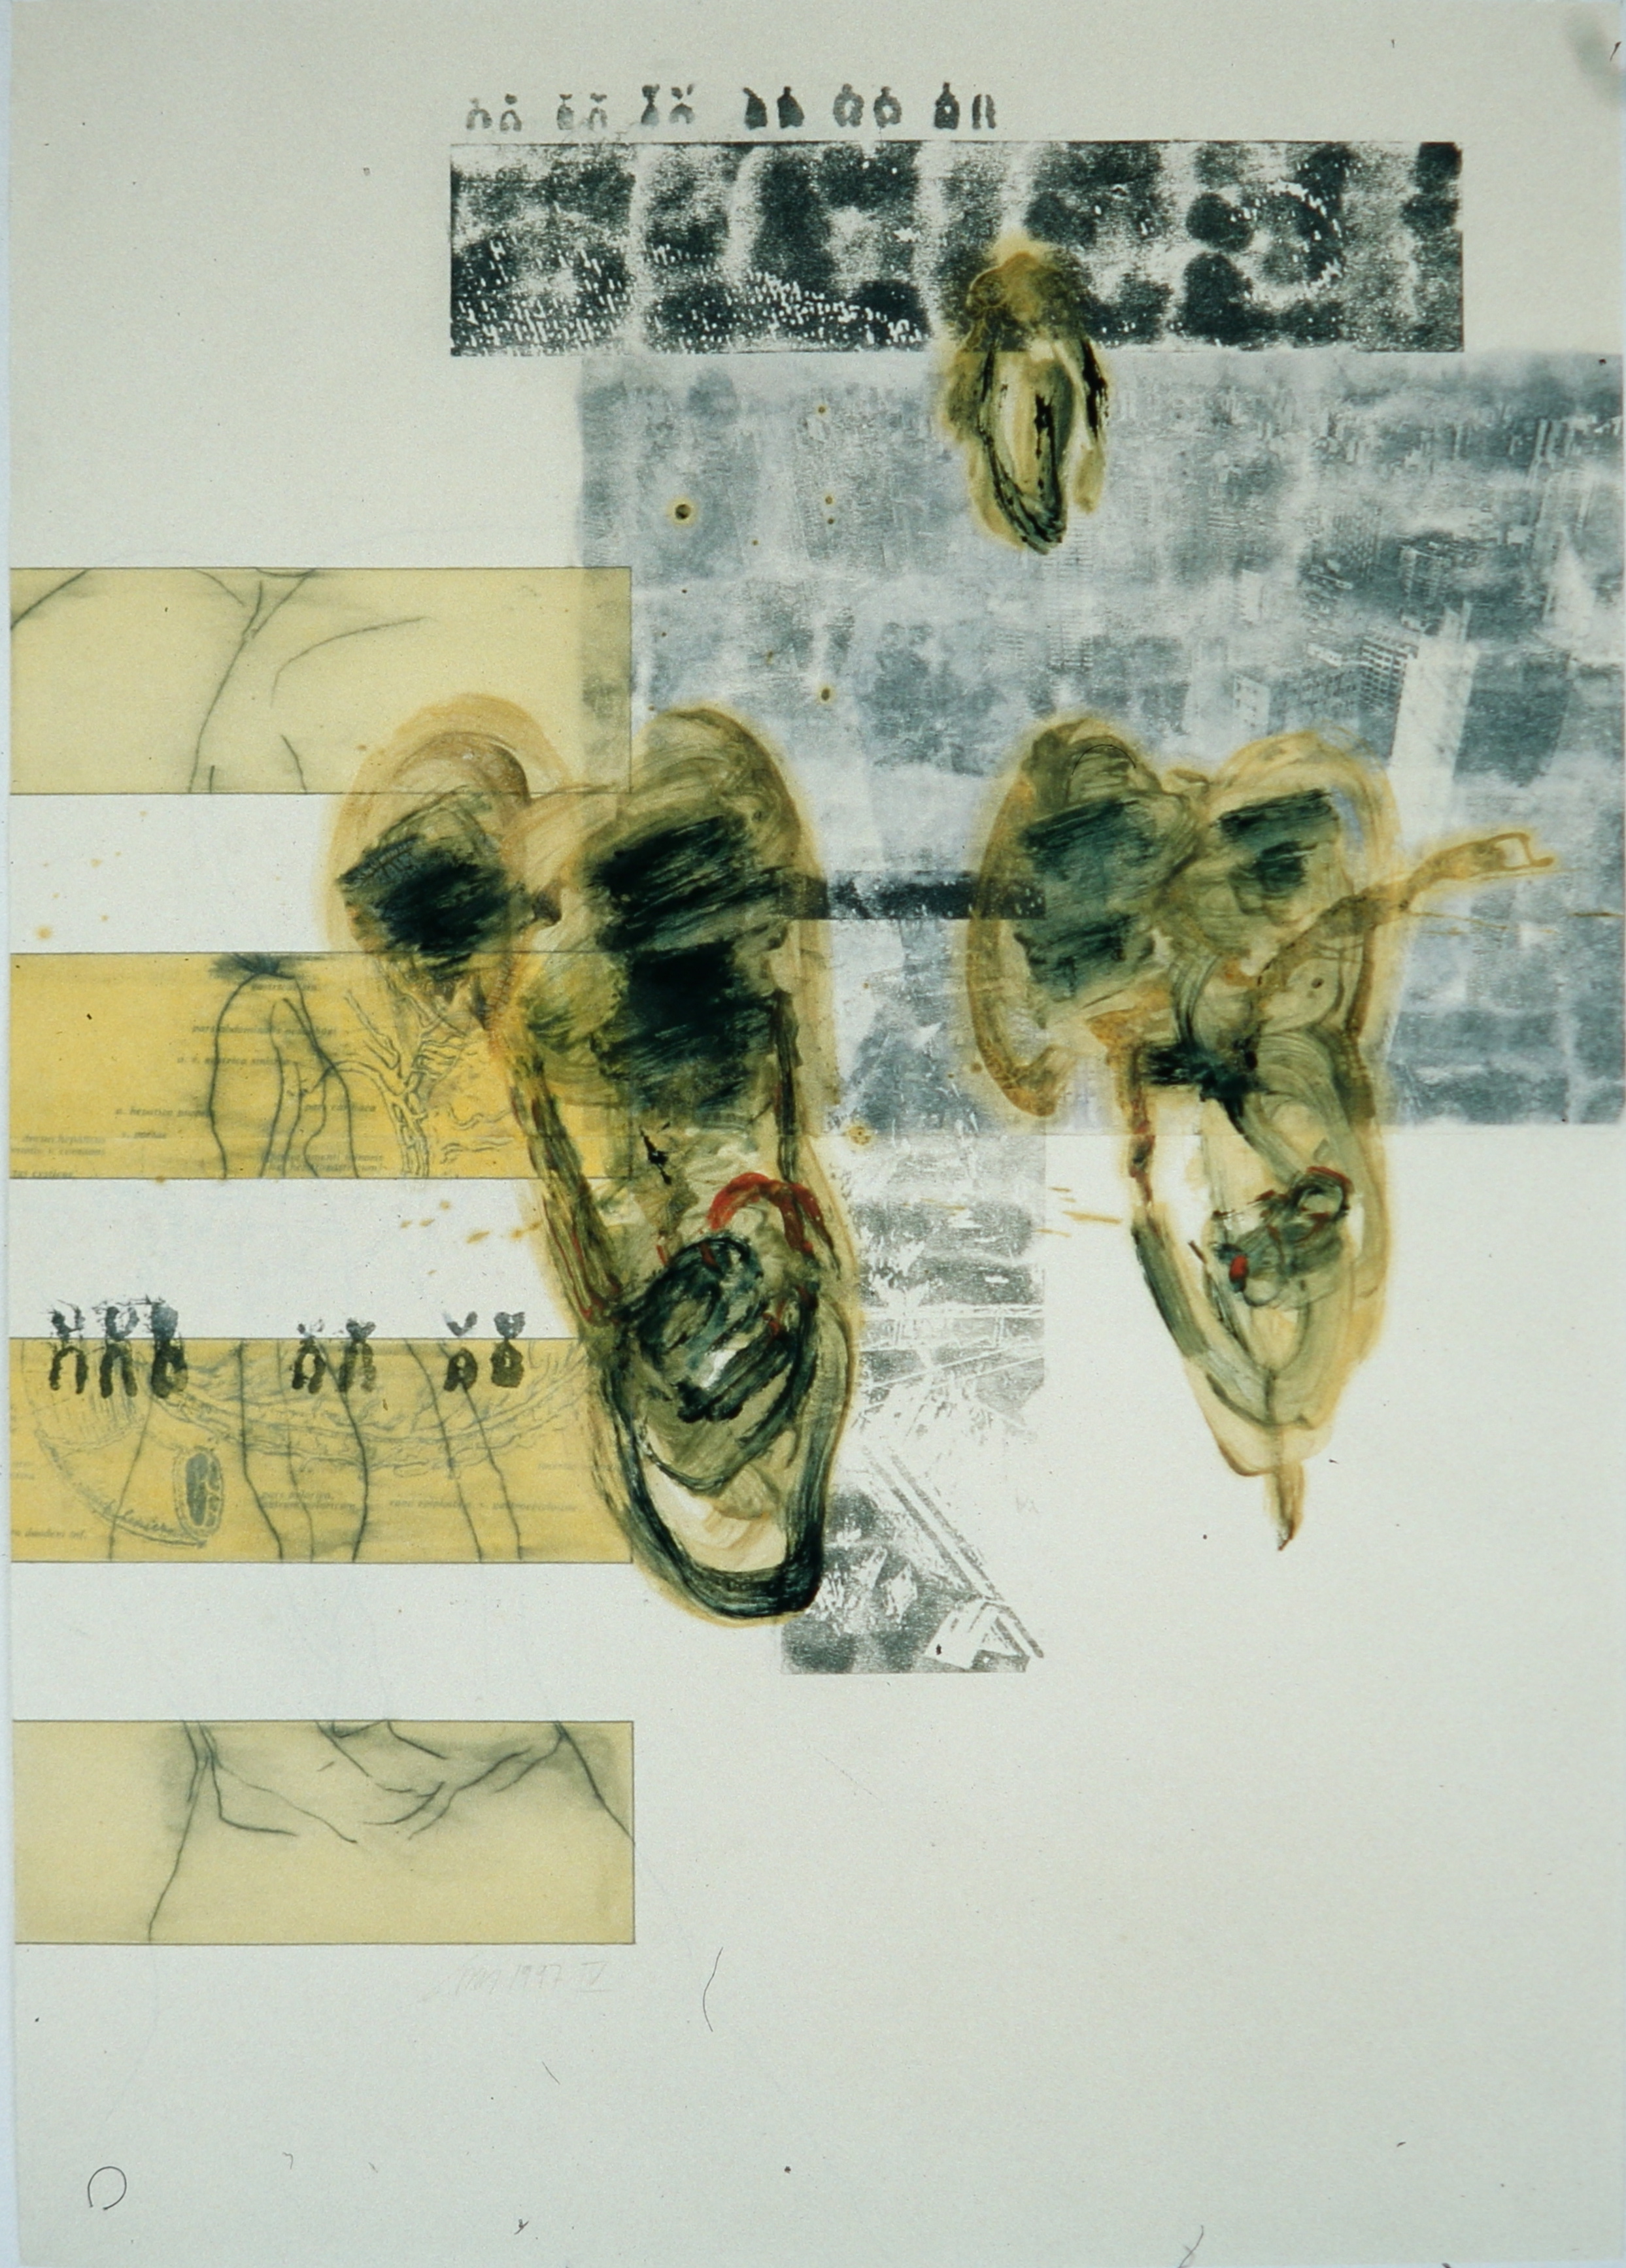 Affaires Ètranges IV, Bleistift, Eiöltempera und Fotokopieumdruck auf Papier, 86 x 61 cm, 1997, Erwin Holl